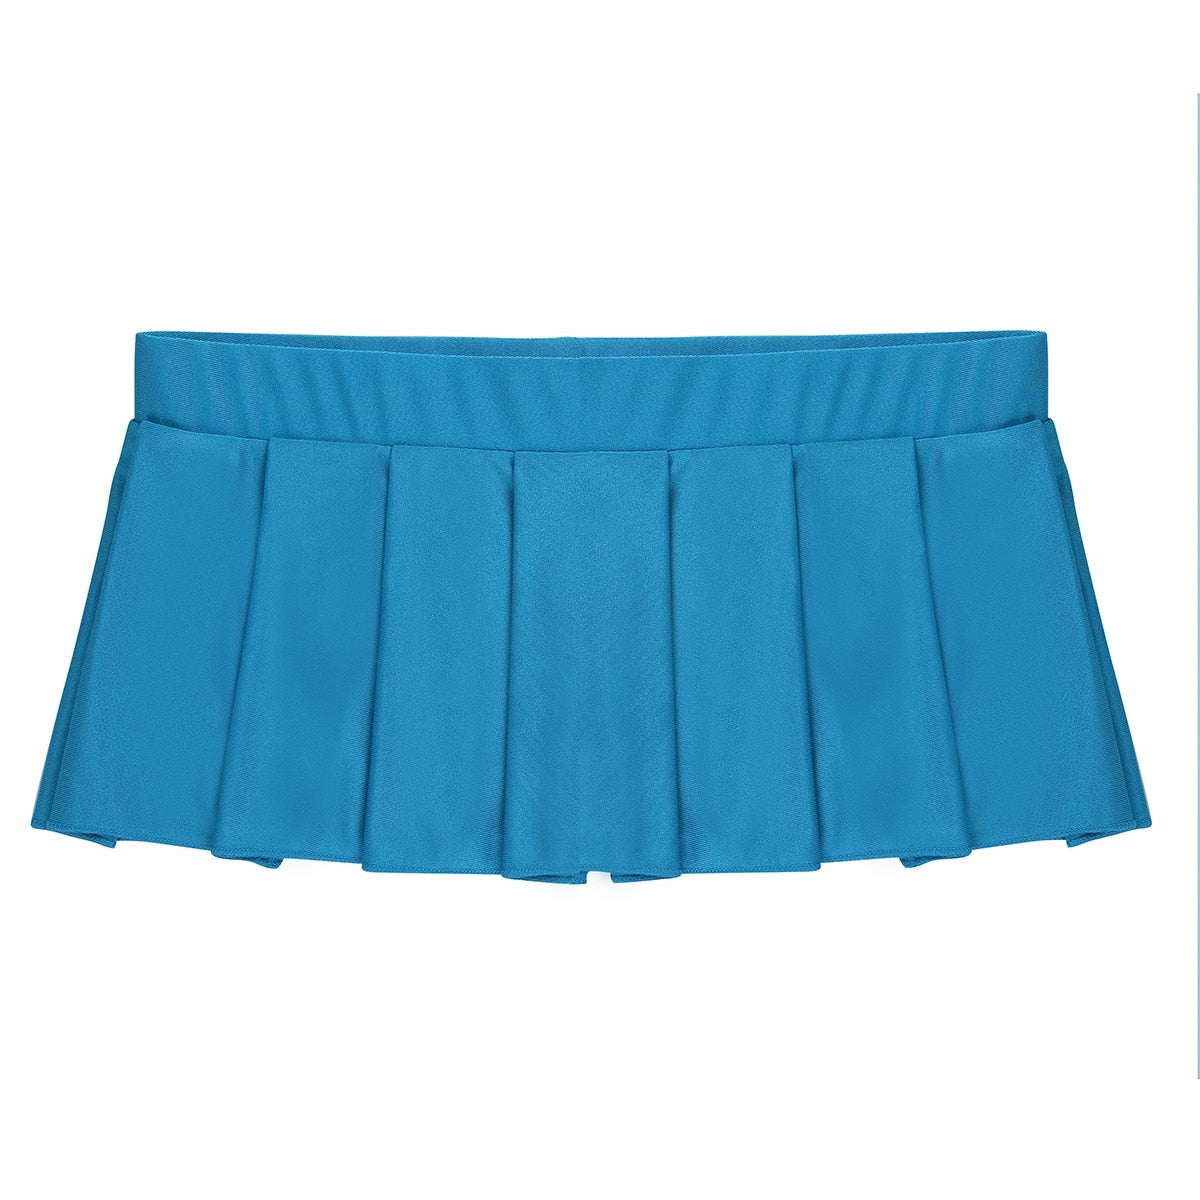 Schoolgirl Uniform Miniskirt